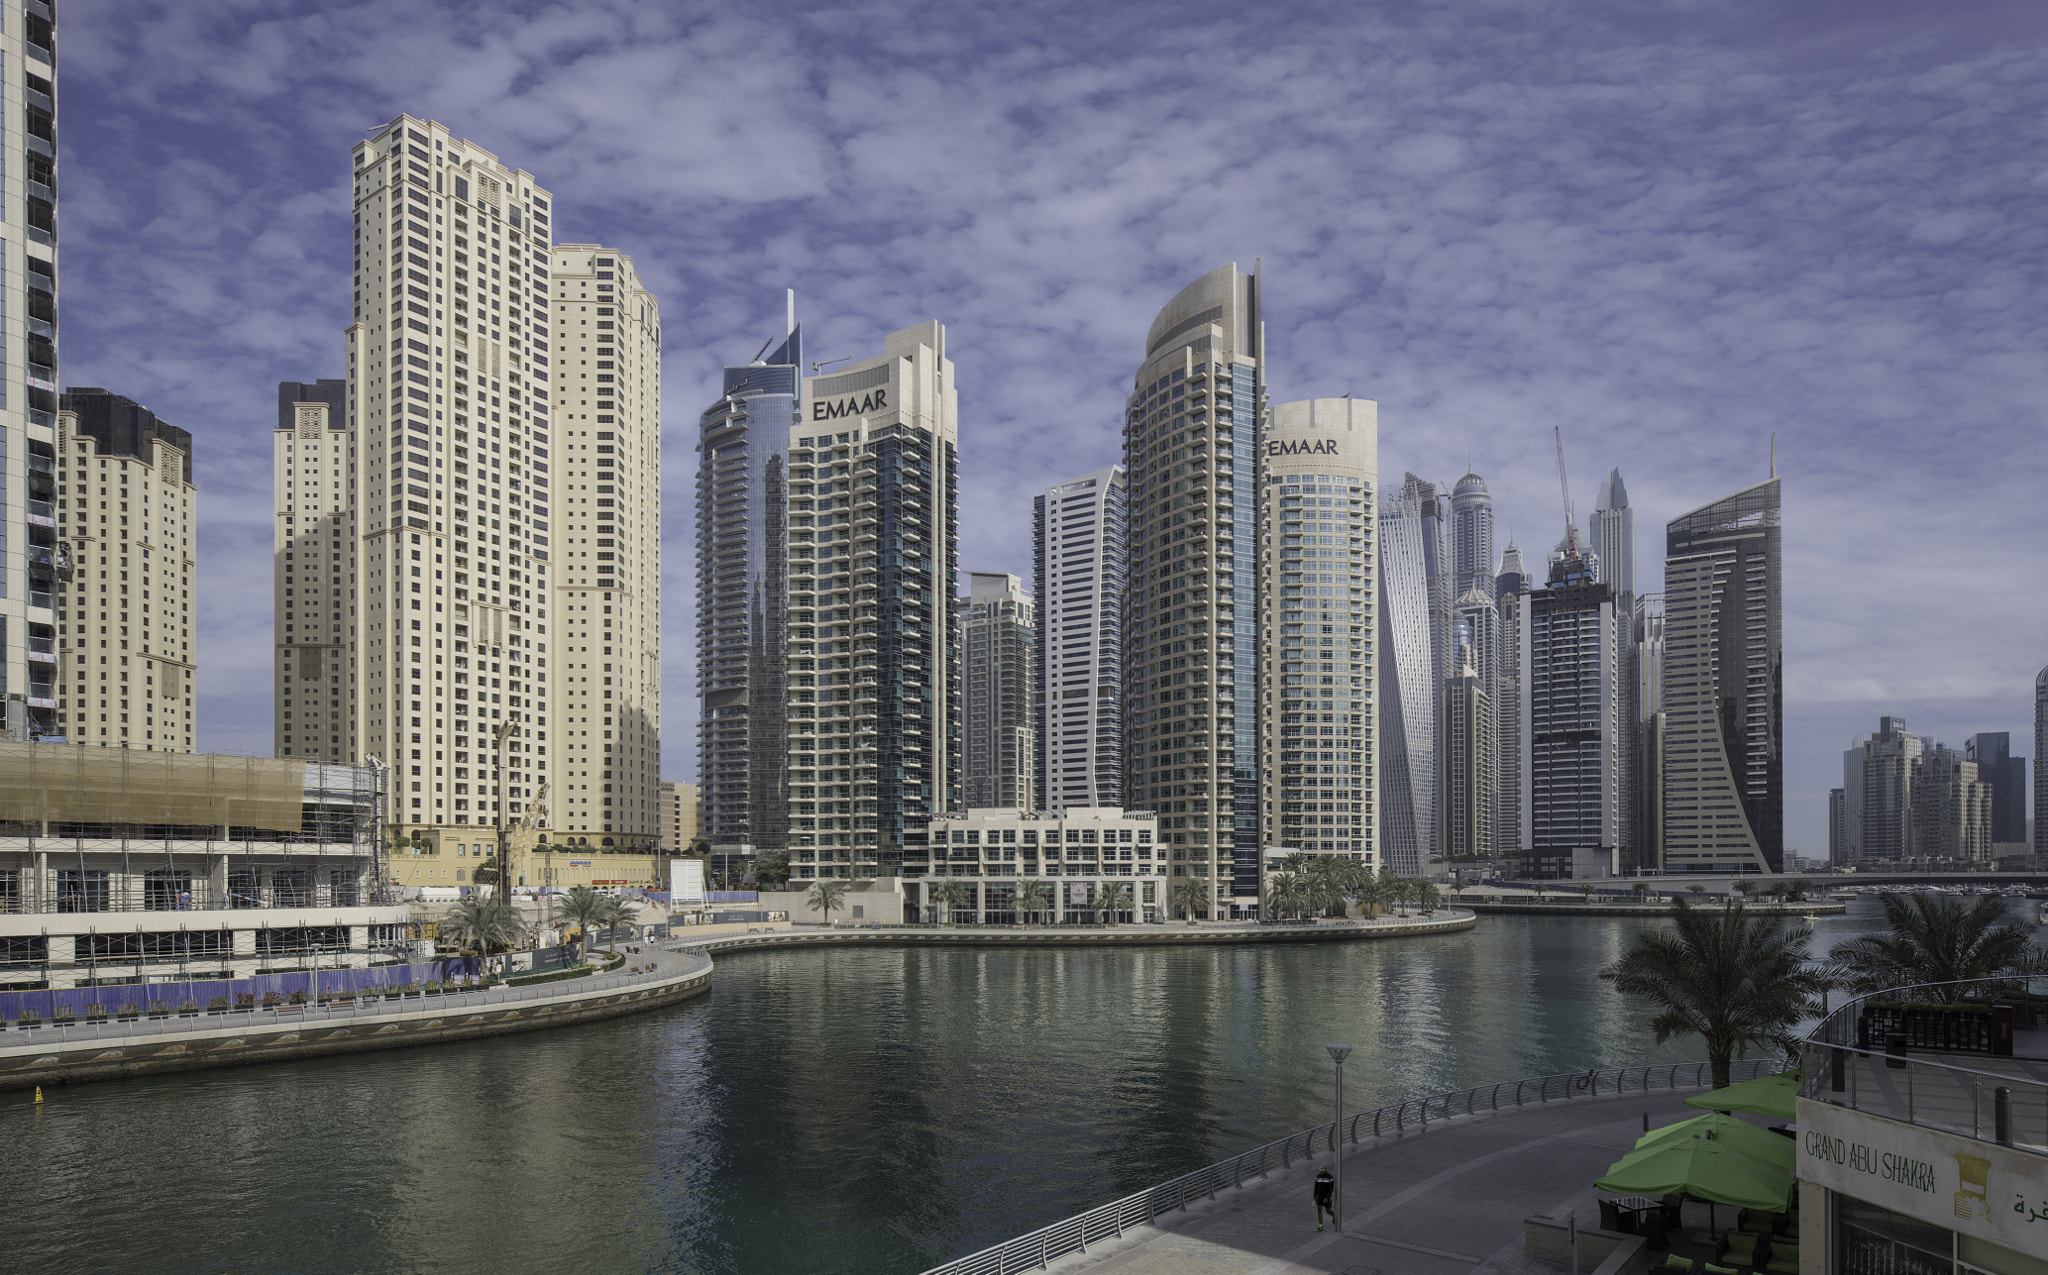 Canon EOS 5D Mark IV + Canon TS-E 24.0mm f/3.5 L II sample photo. Dubai marina panorama photography